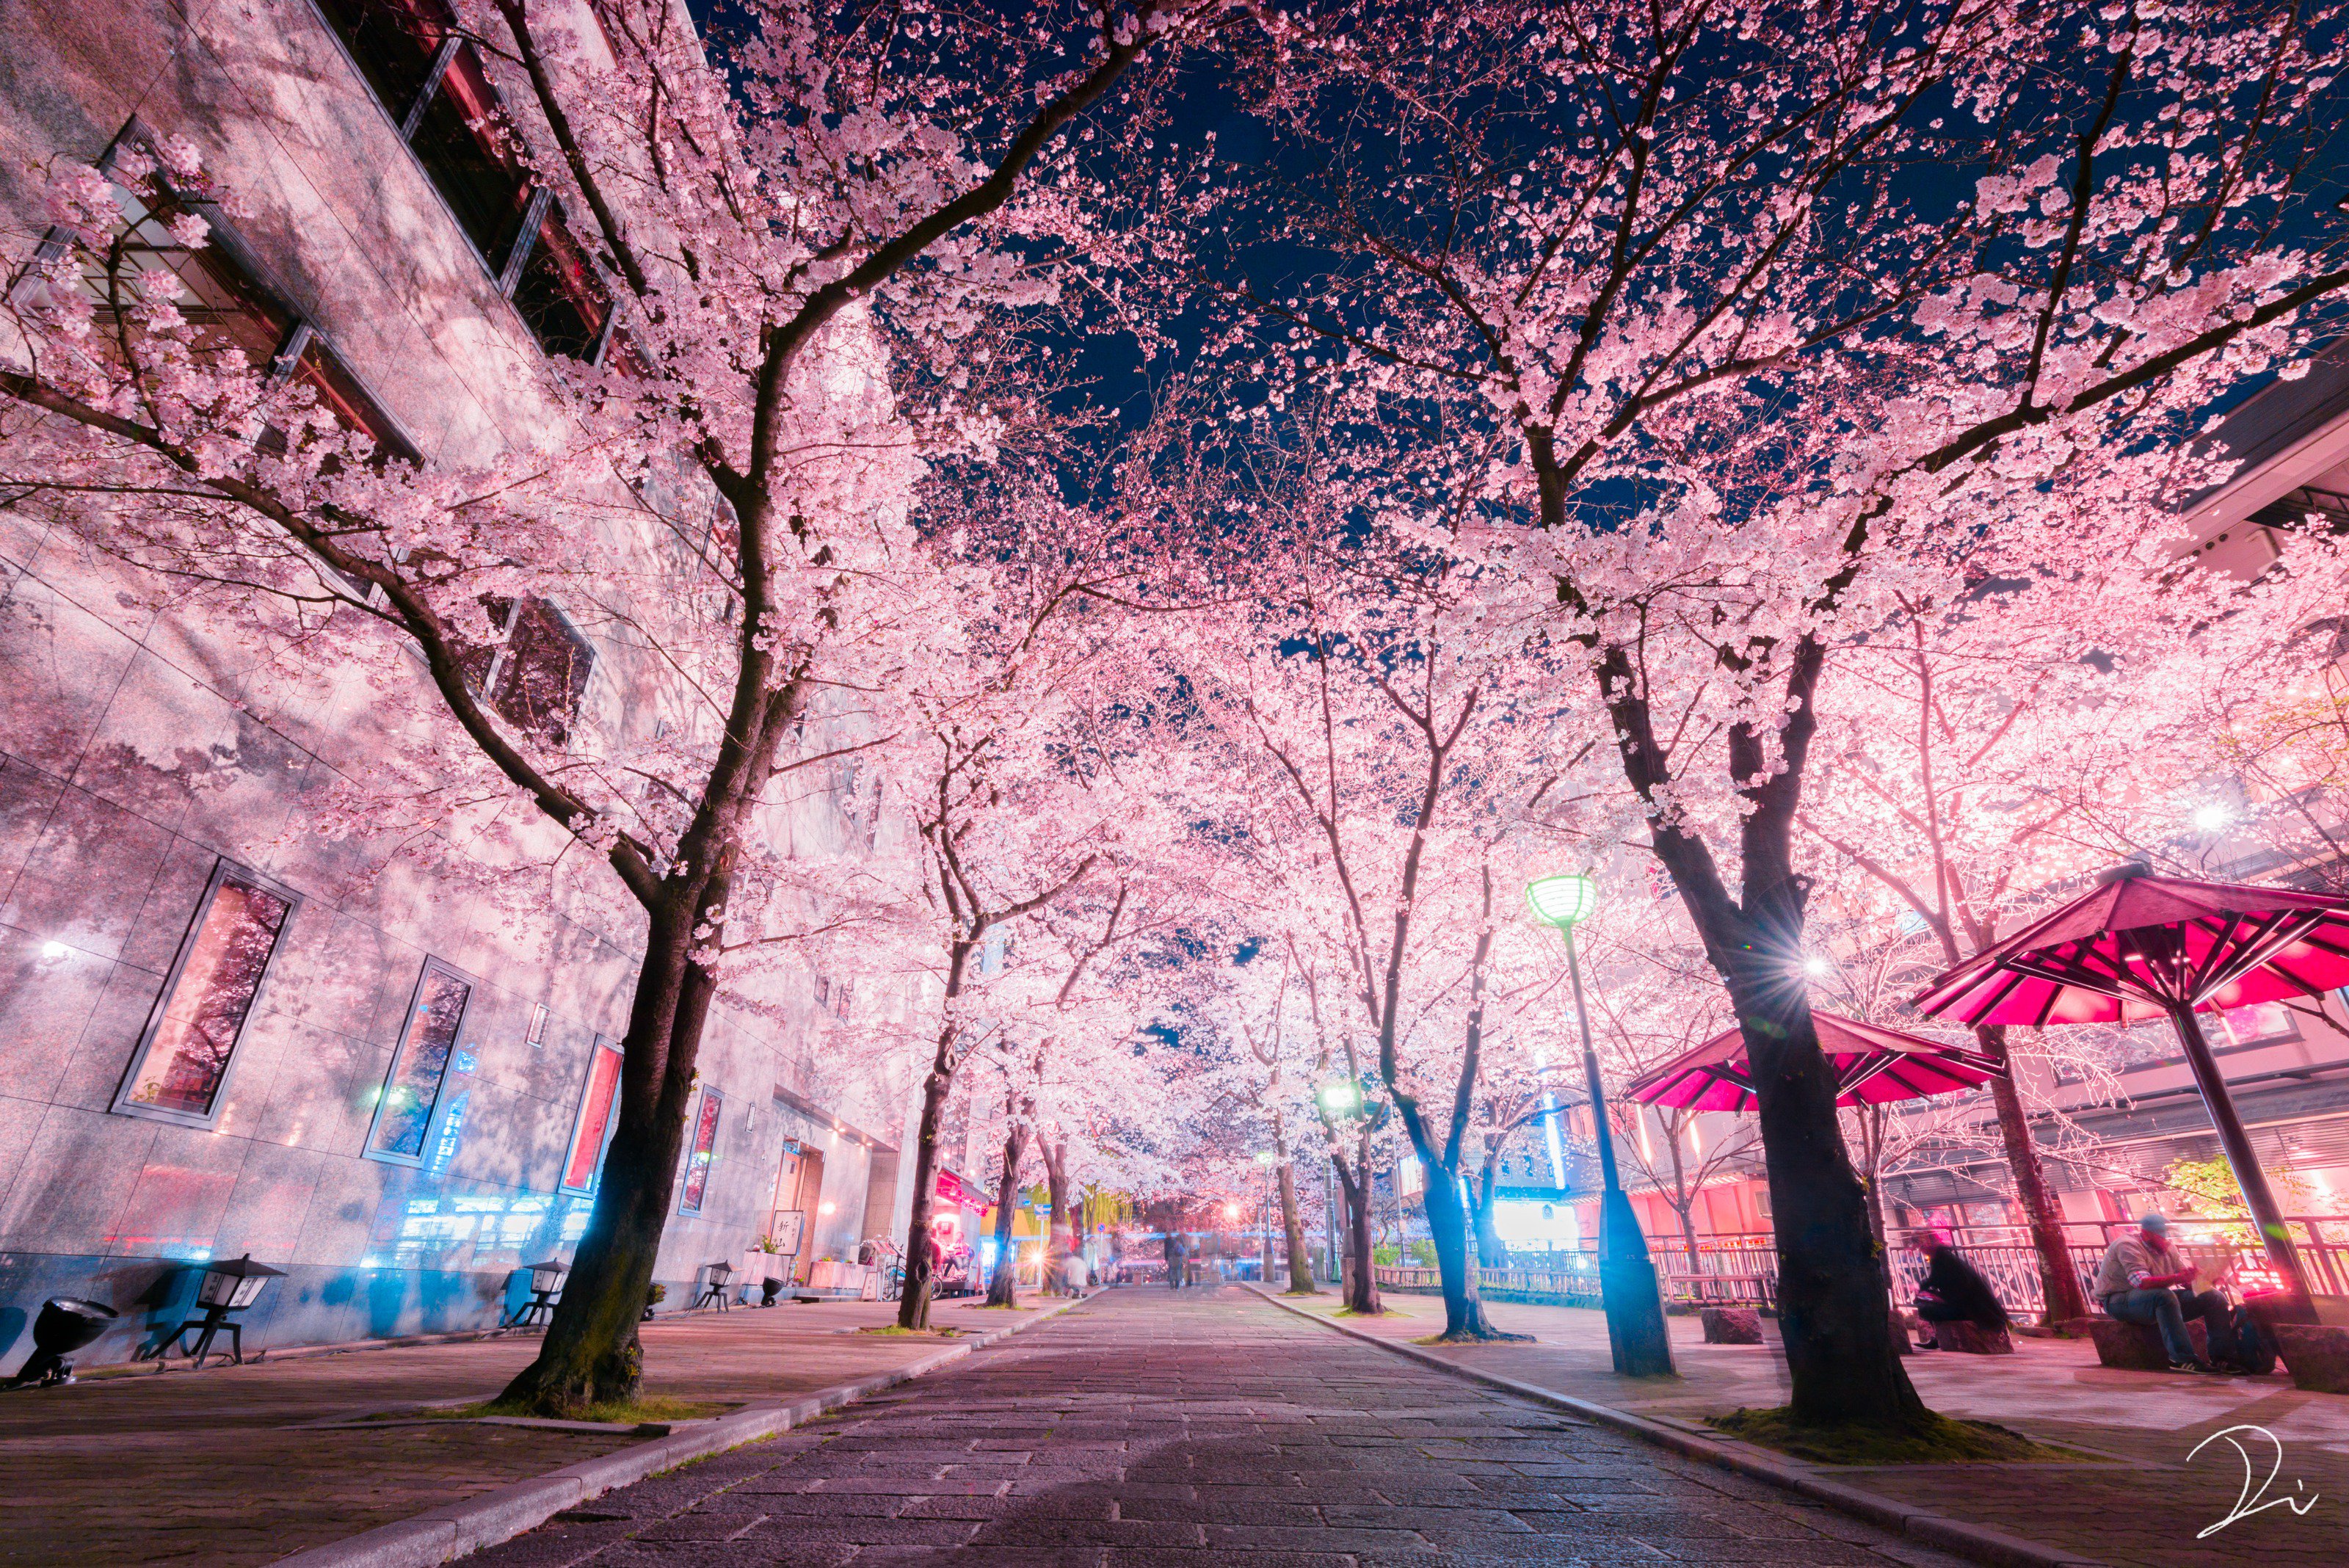 うさだぬ 京都写真家 夜桜４選 段々と春に近付き 少しずつ花が咲き始めてきました 桜が咲くのを心待ちにしつつ過去の夜桜で少し早いお花見をしましょう 1 京都 2 滋賀 3 京都 4 兵庫 インスタのフォローもお待ちしています T Co